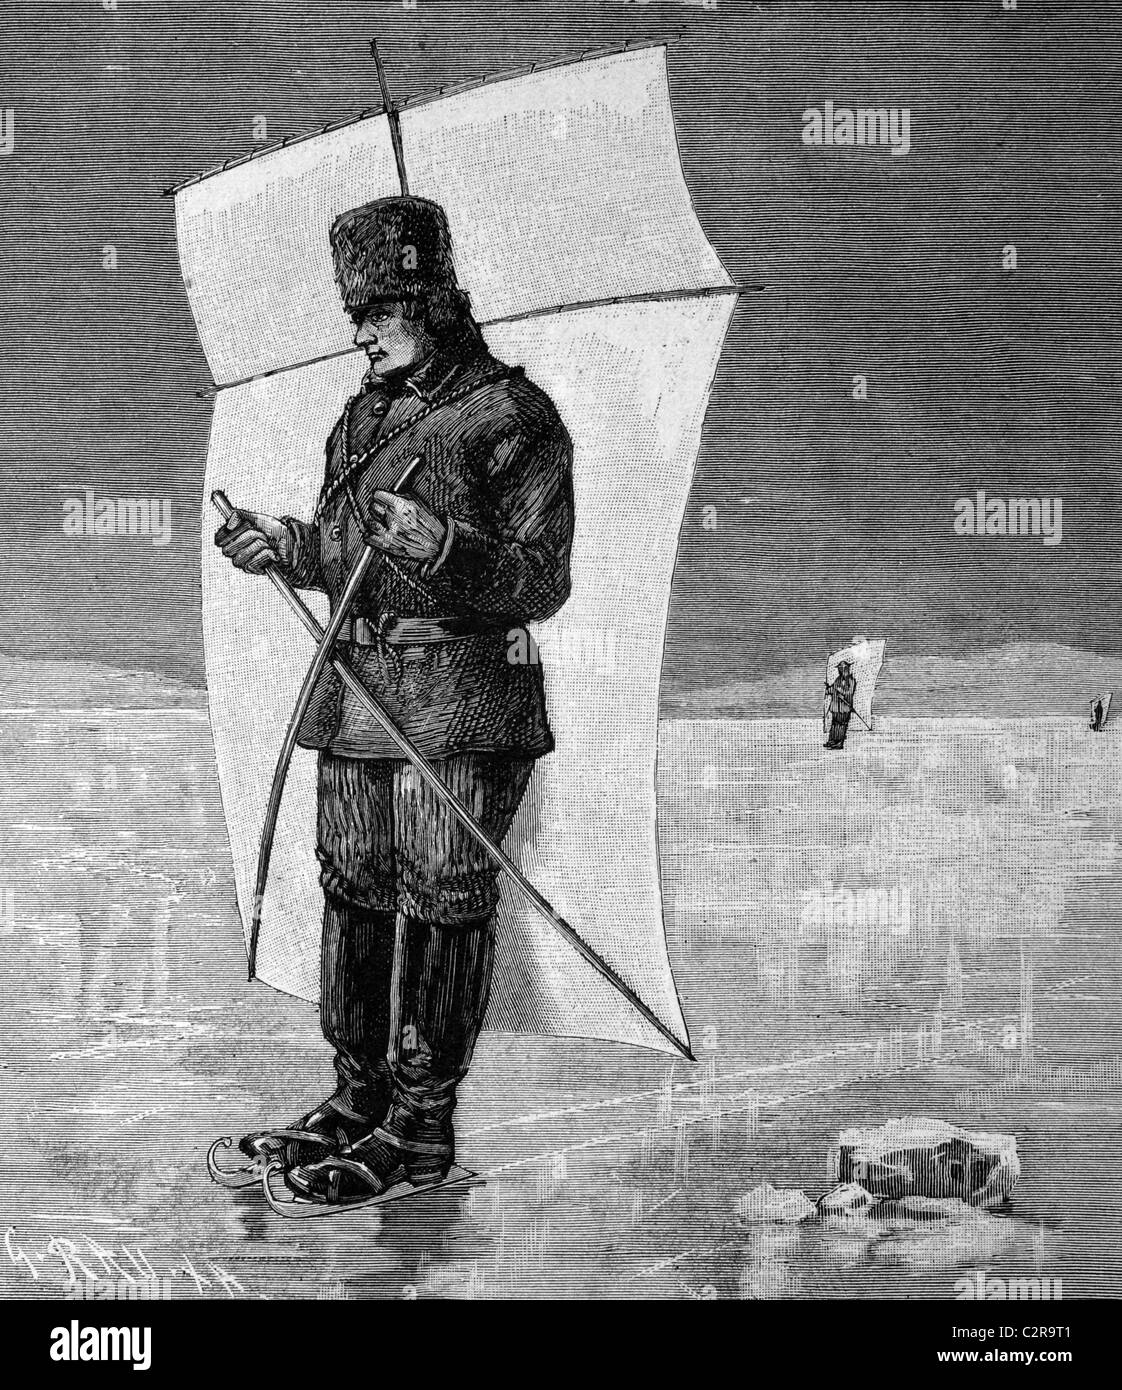 Skat la voile sur la rivière Hudson gelée, en Amérique du Nord, illustration historique, vers 1886 Banque D'Images